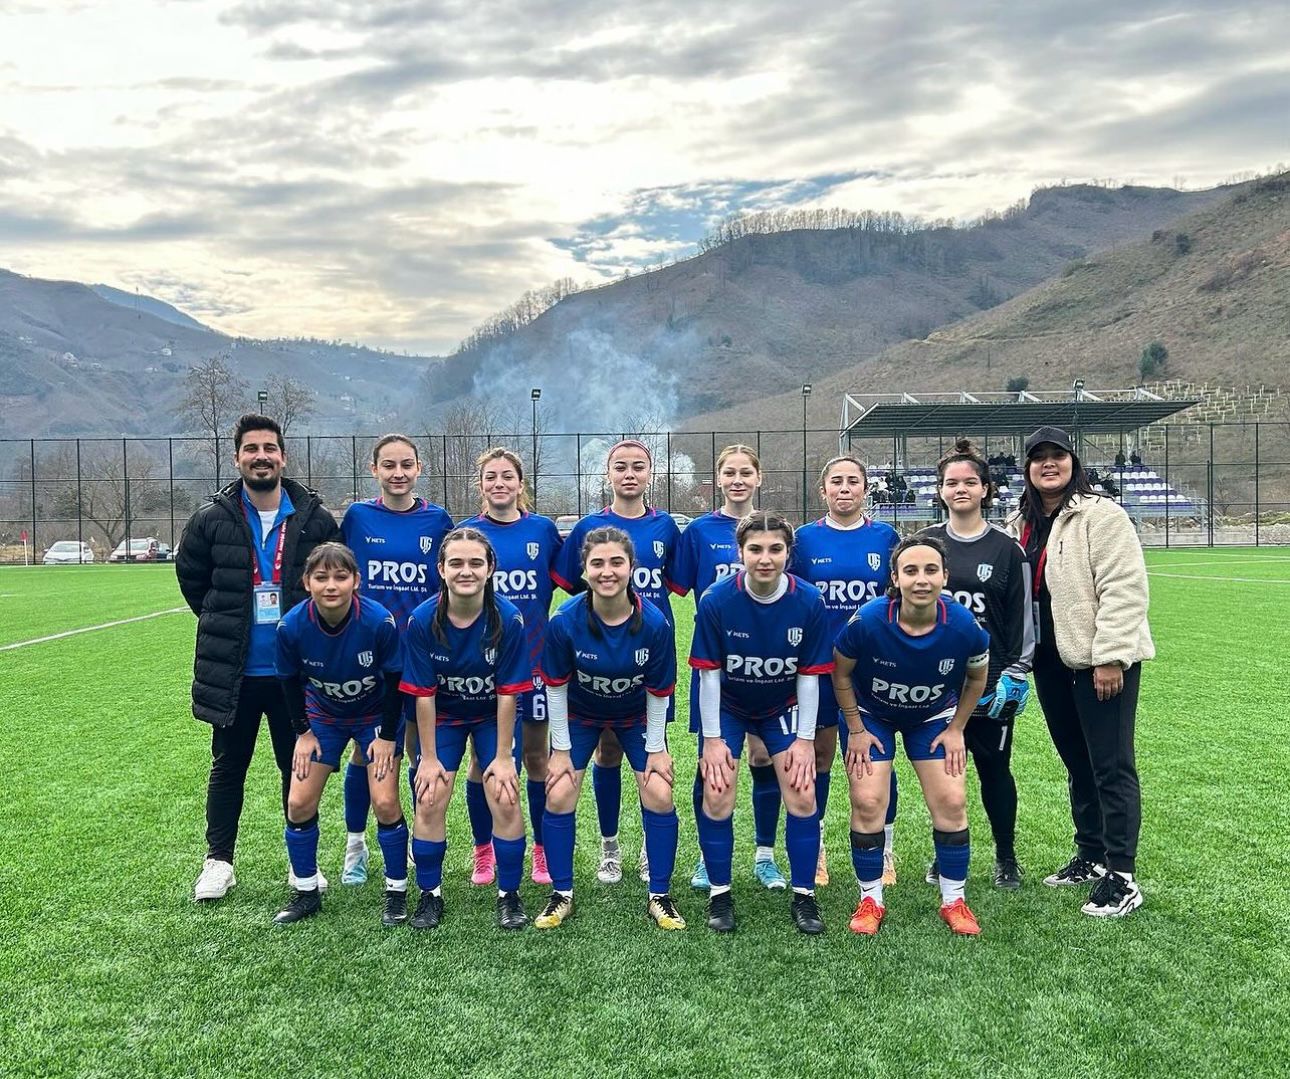  Ordu Gücü Futbol Kulübü’nden Ordu Derbisi’nde Bol Gollü Galibiyet 16-0